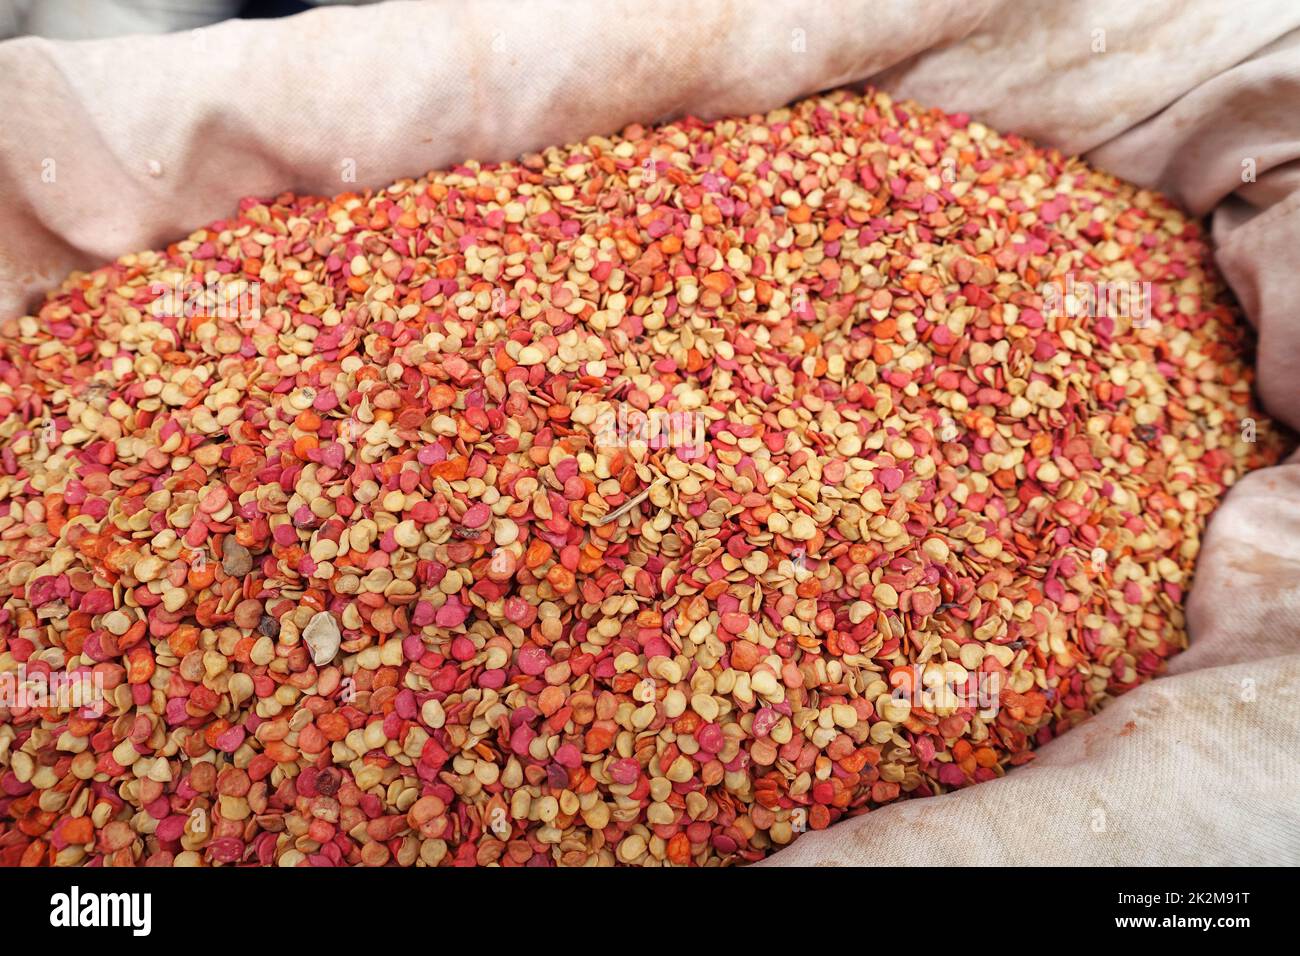 Unverpackte, biologisch abgewandte Samen von Pfeffersamen, die in Stoffbeuteln verkauft werden Stockfoto